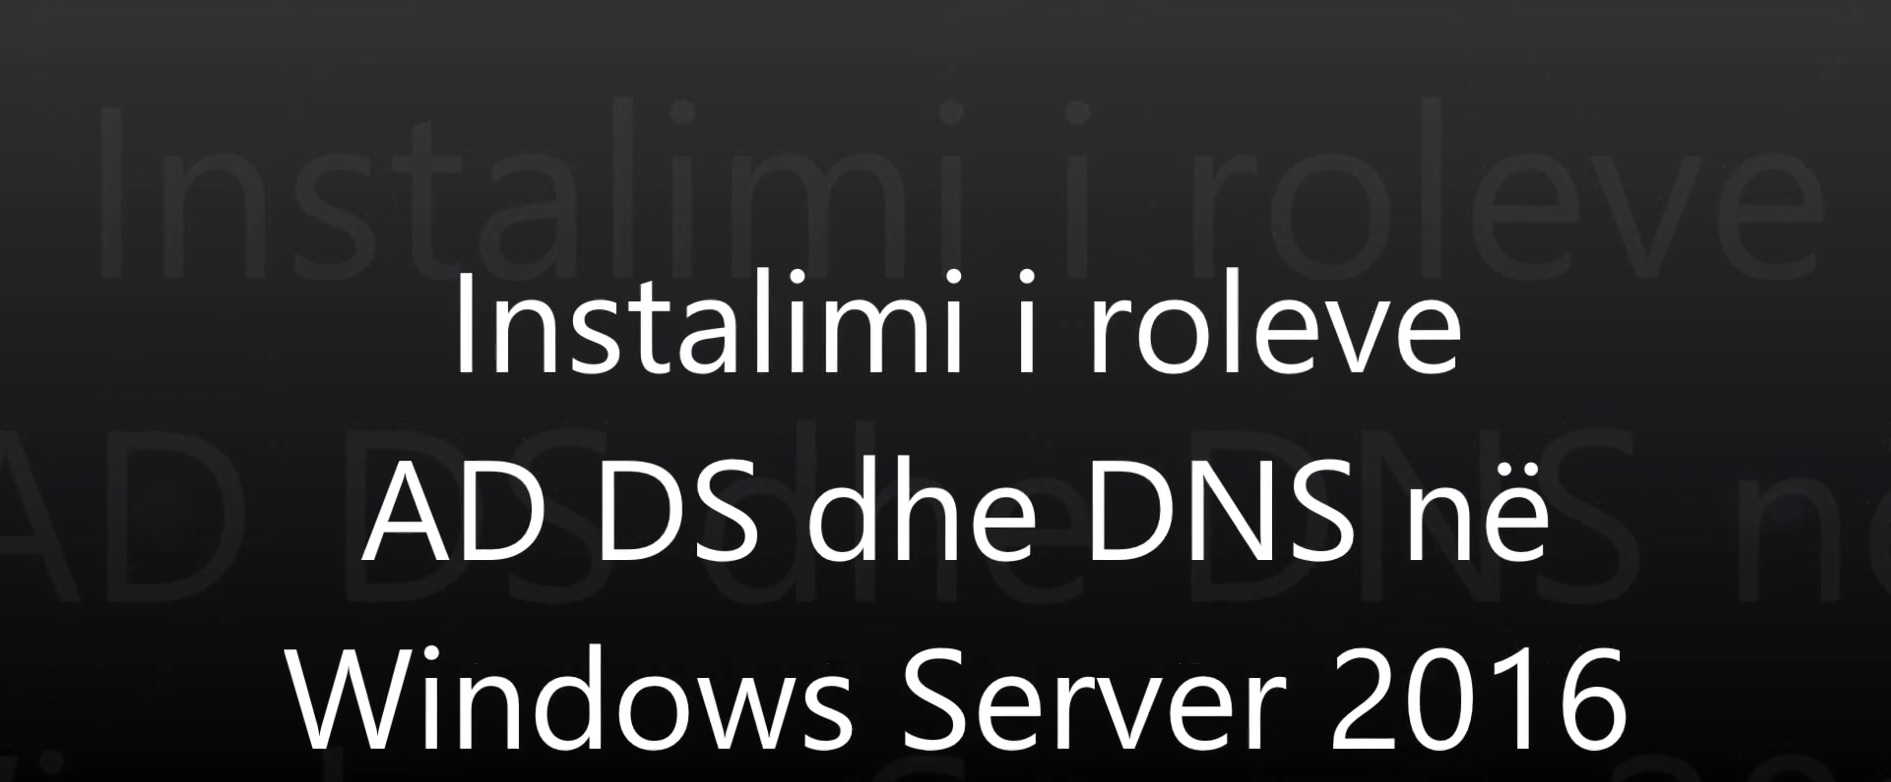 Instalimi i roleve AD DS dhe DNS në Windows Server 2016